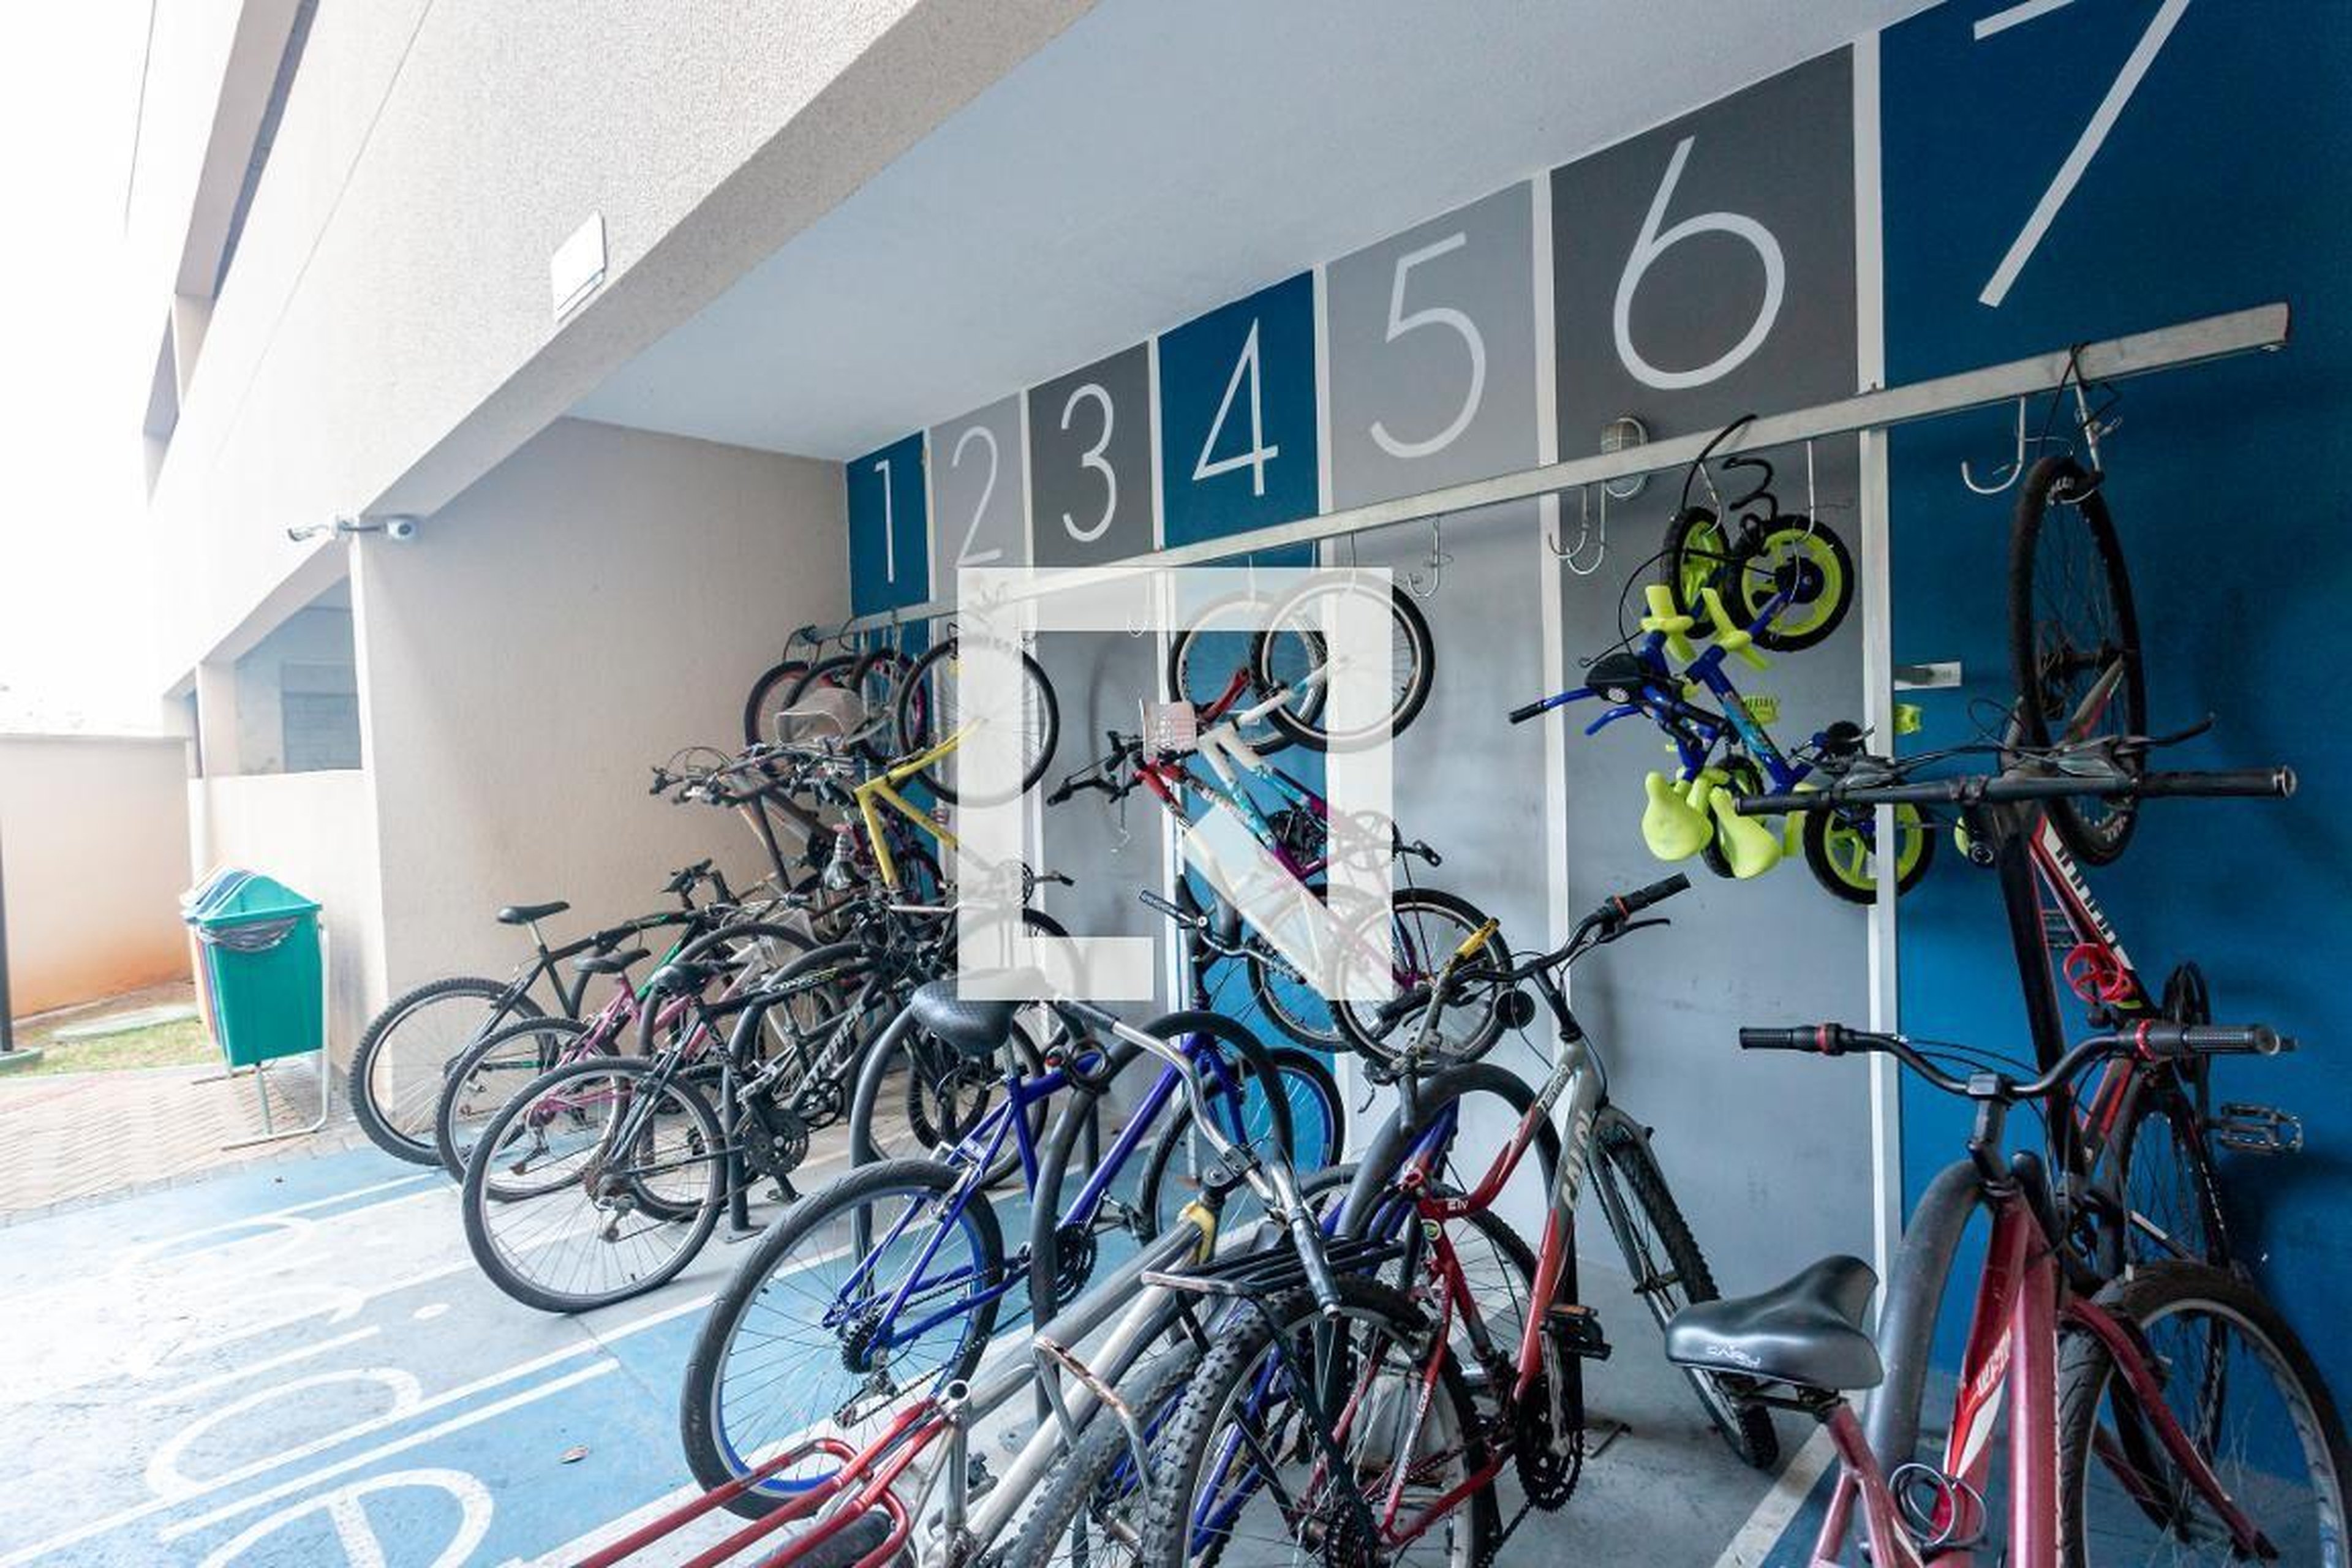 Bicicletario - Edifício Único Sacomã